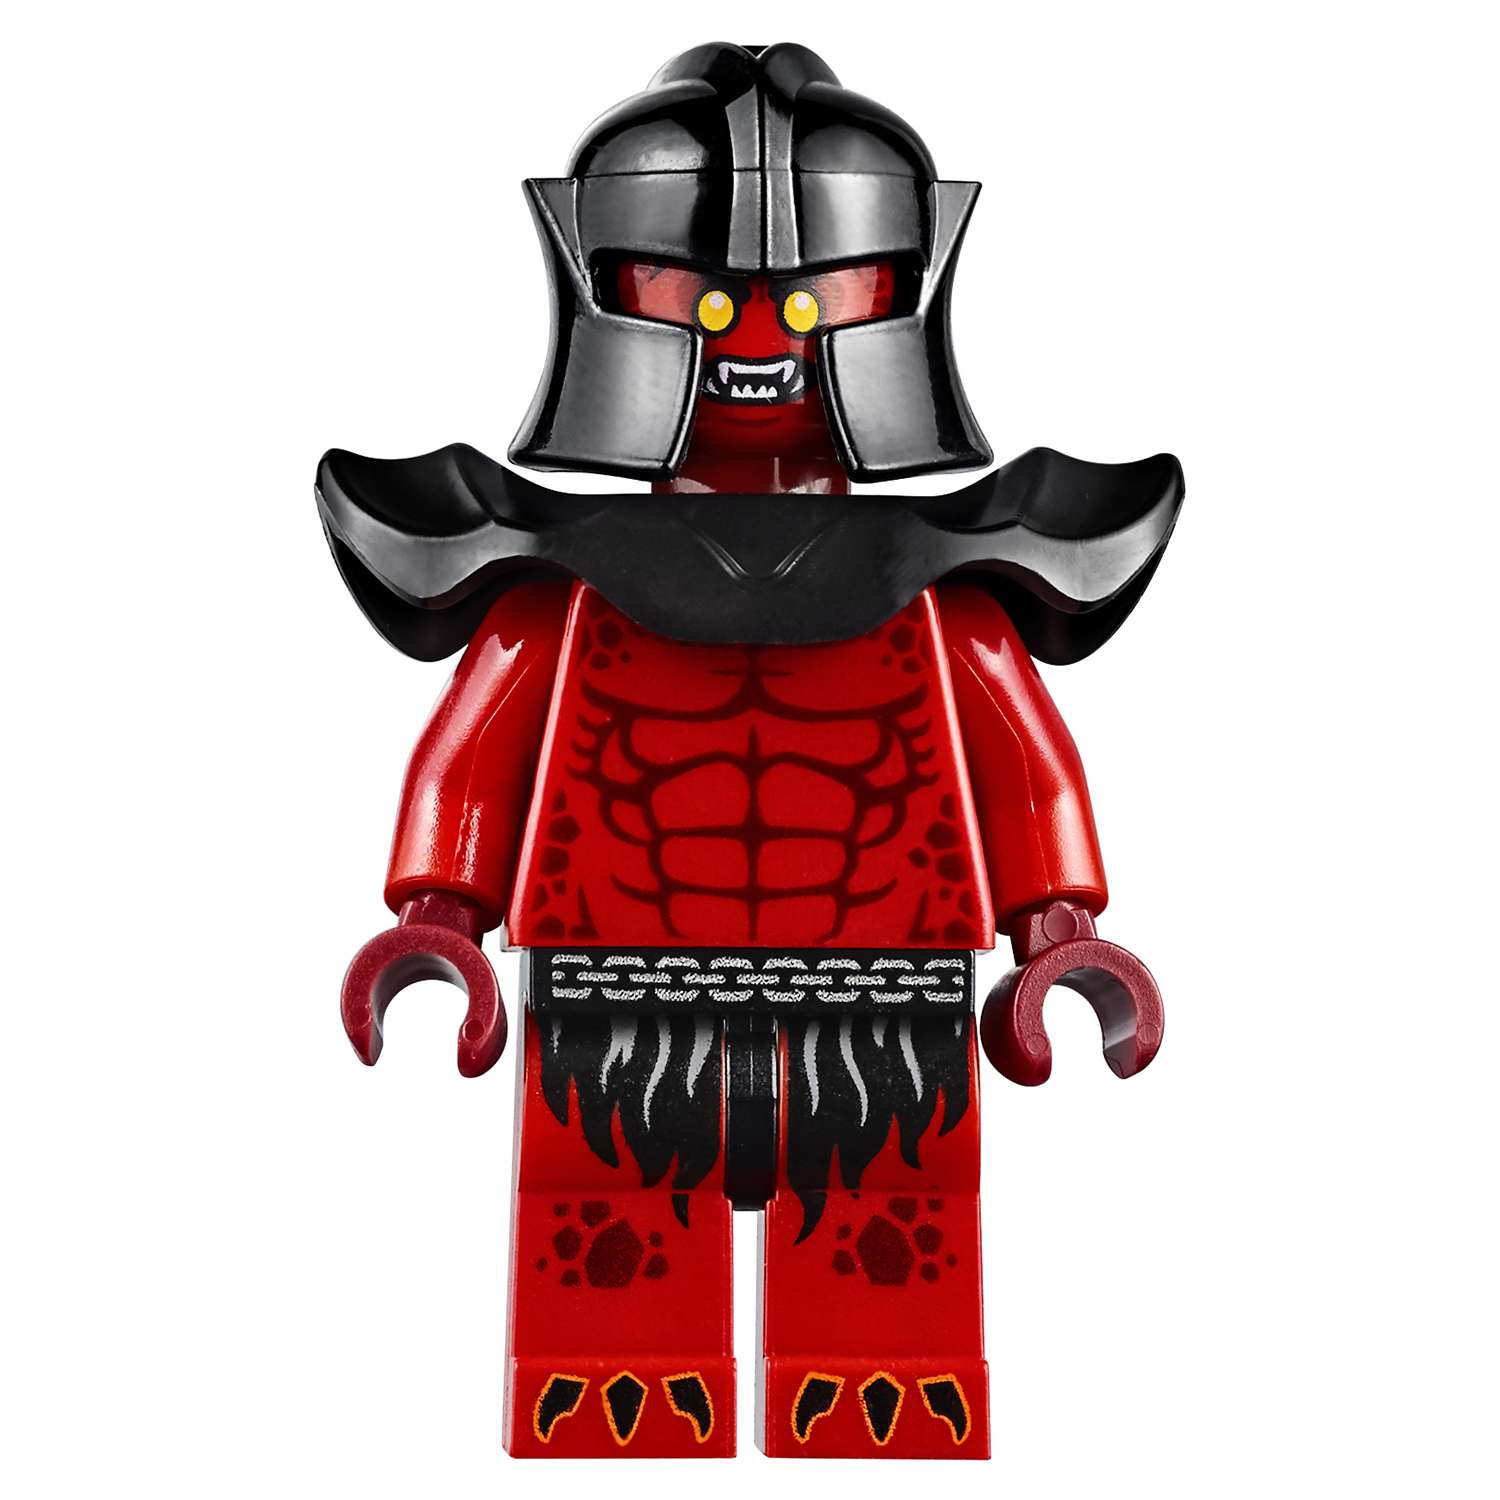 Конструктор LEGO Nexo Knights Молниеносная машина Мэйси (70319) - фото 10